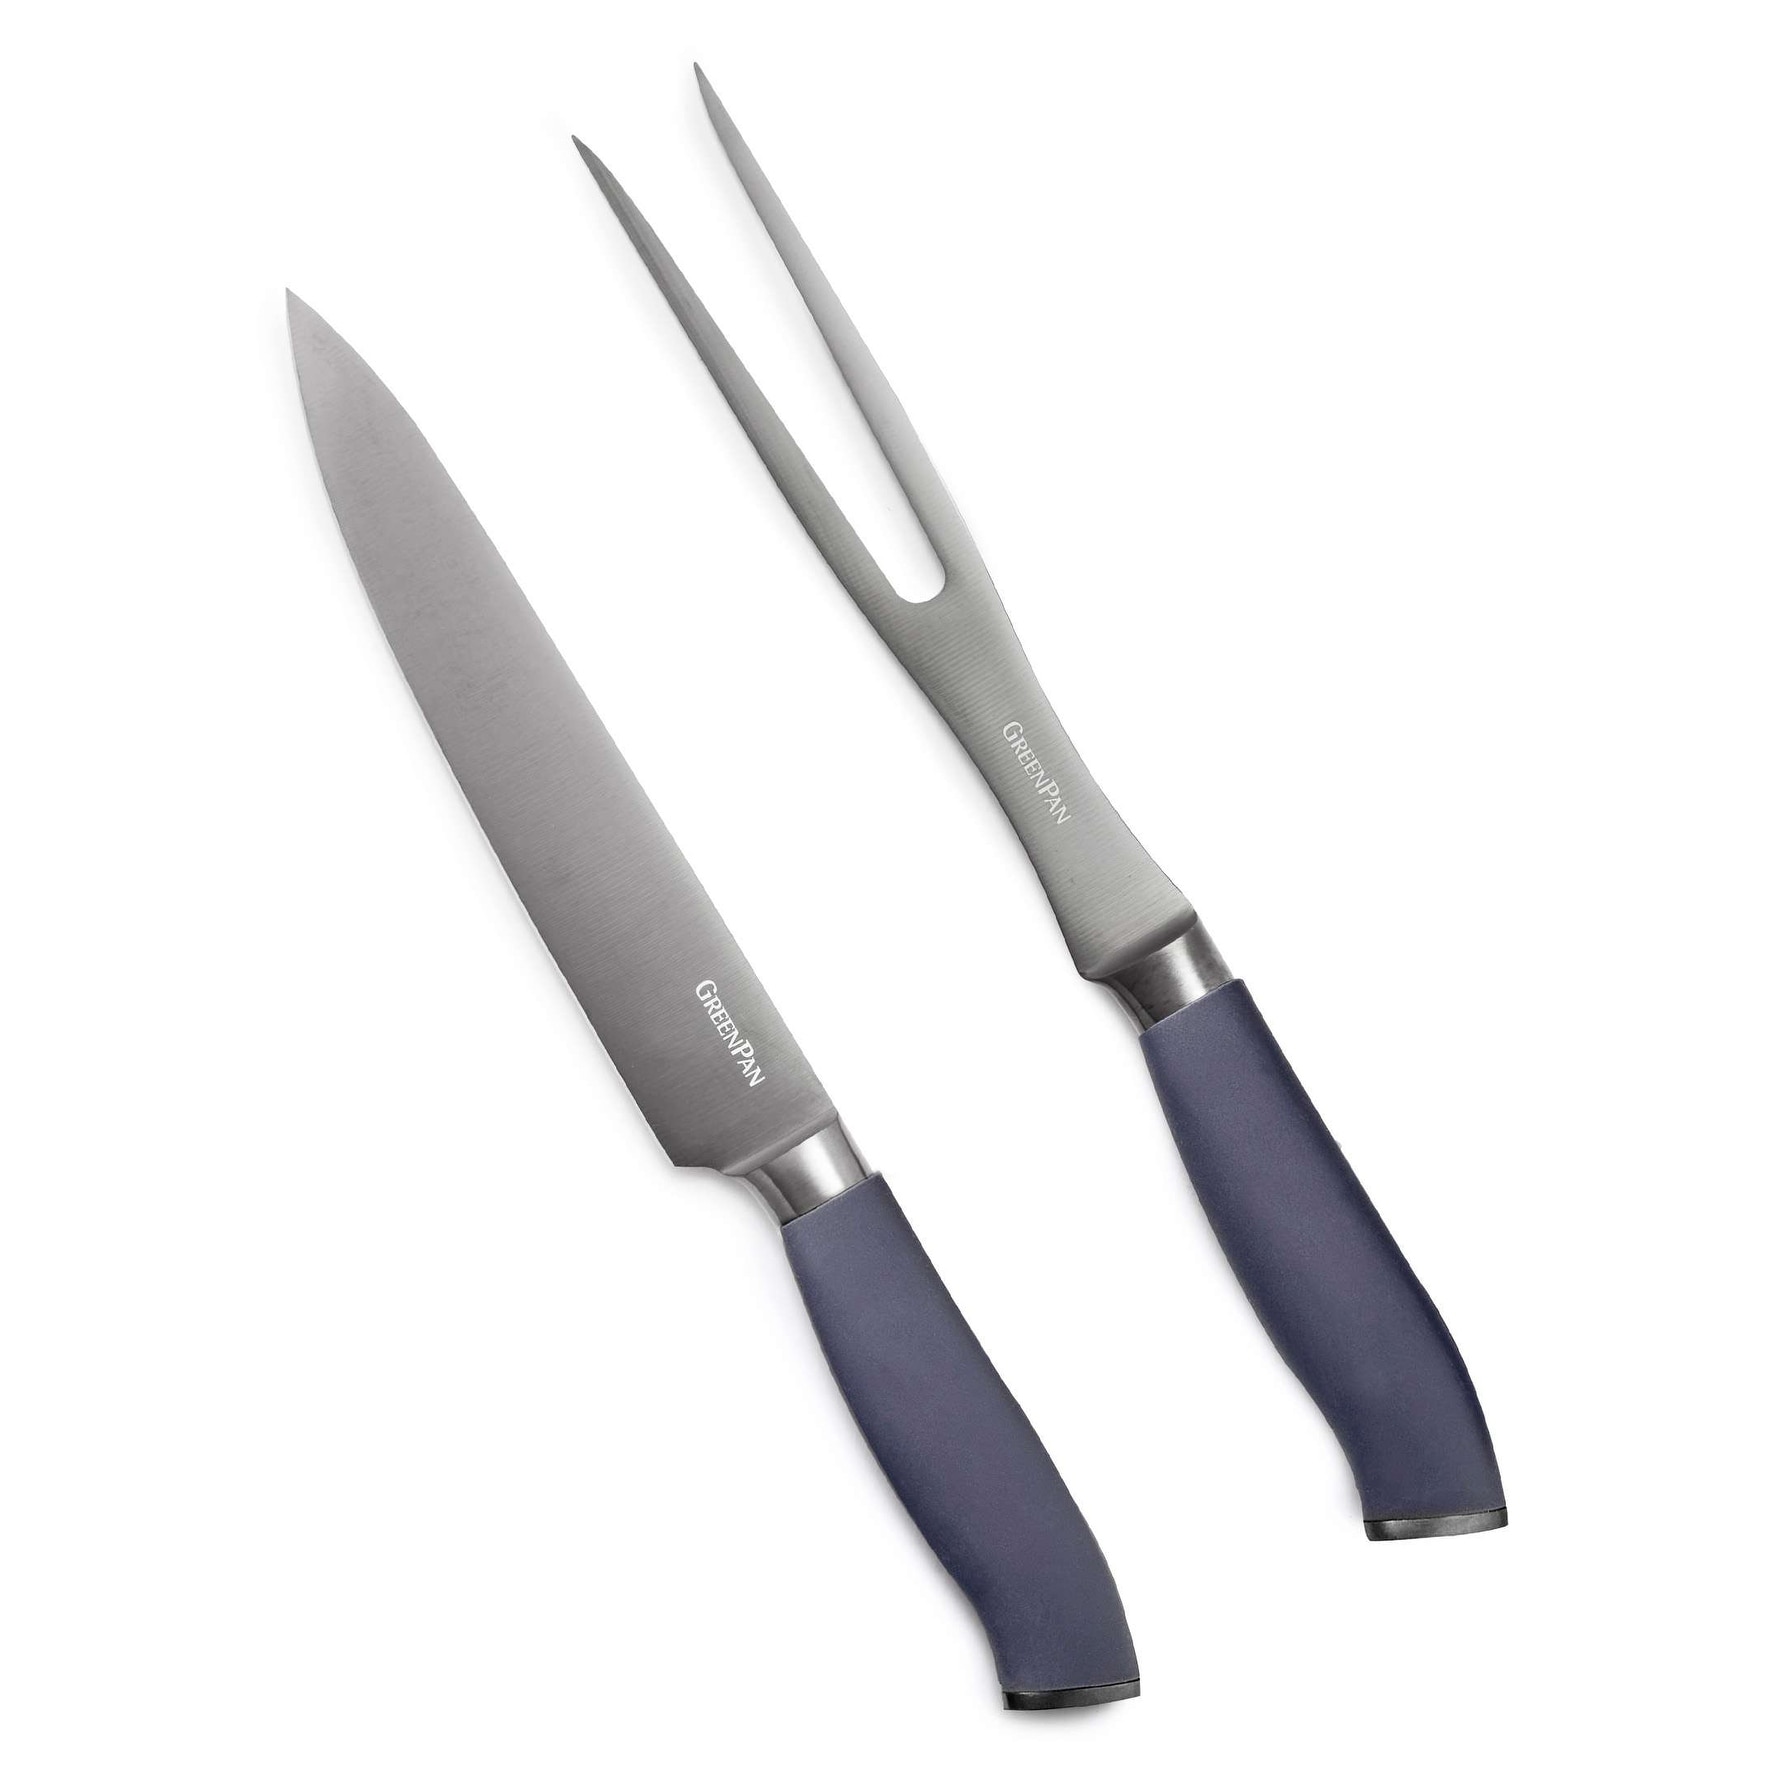 Elan 2-piece Carving Knife Set